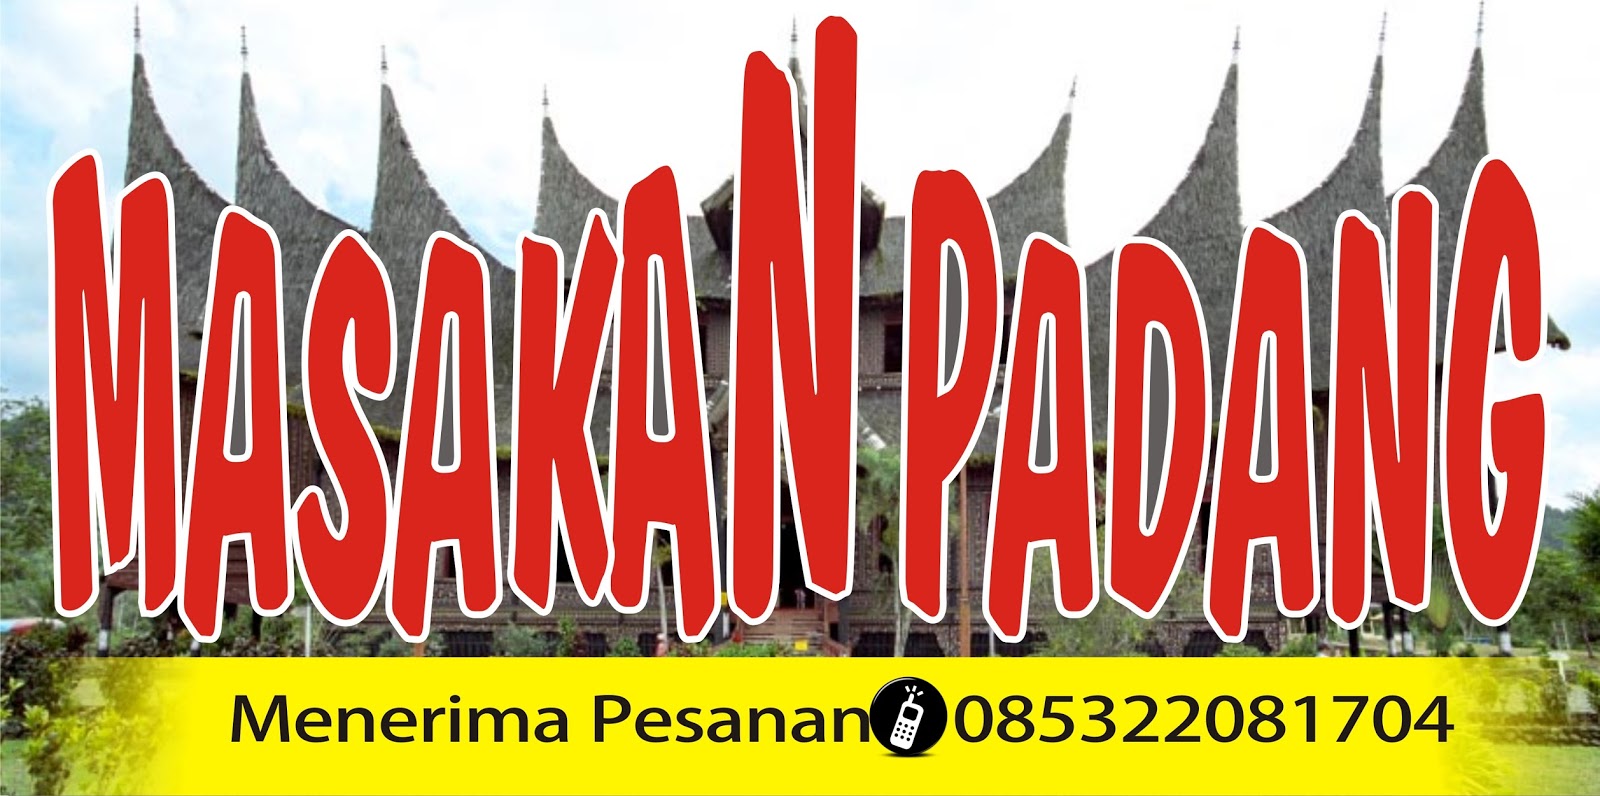 Download Spanduk Rumah Makan Padang.cdr  KARYAKU